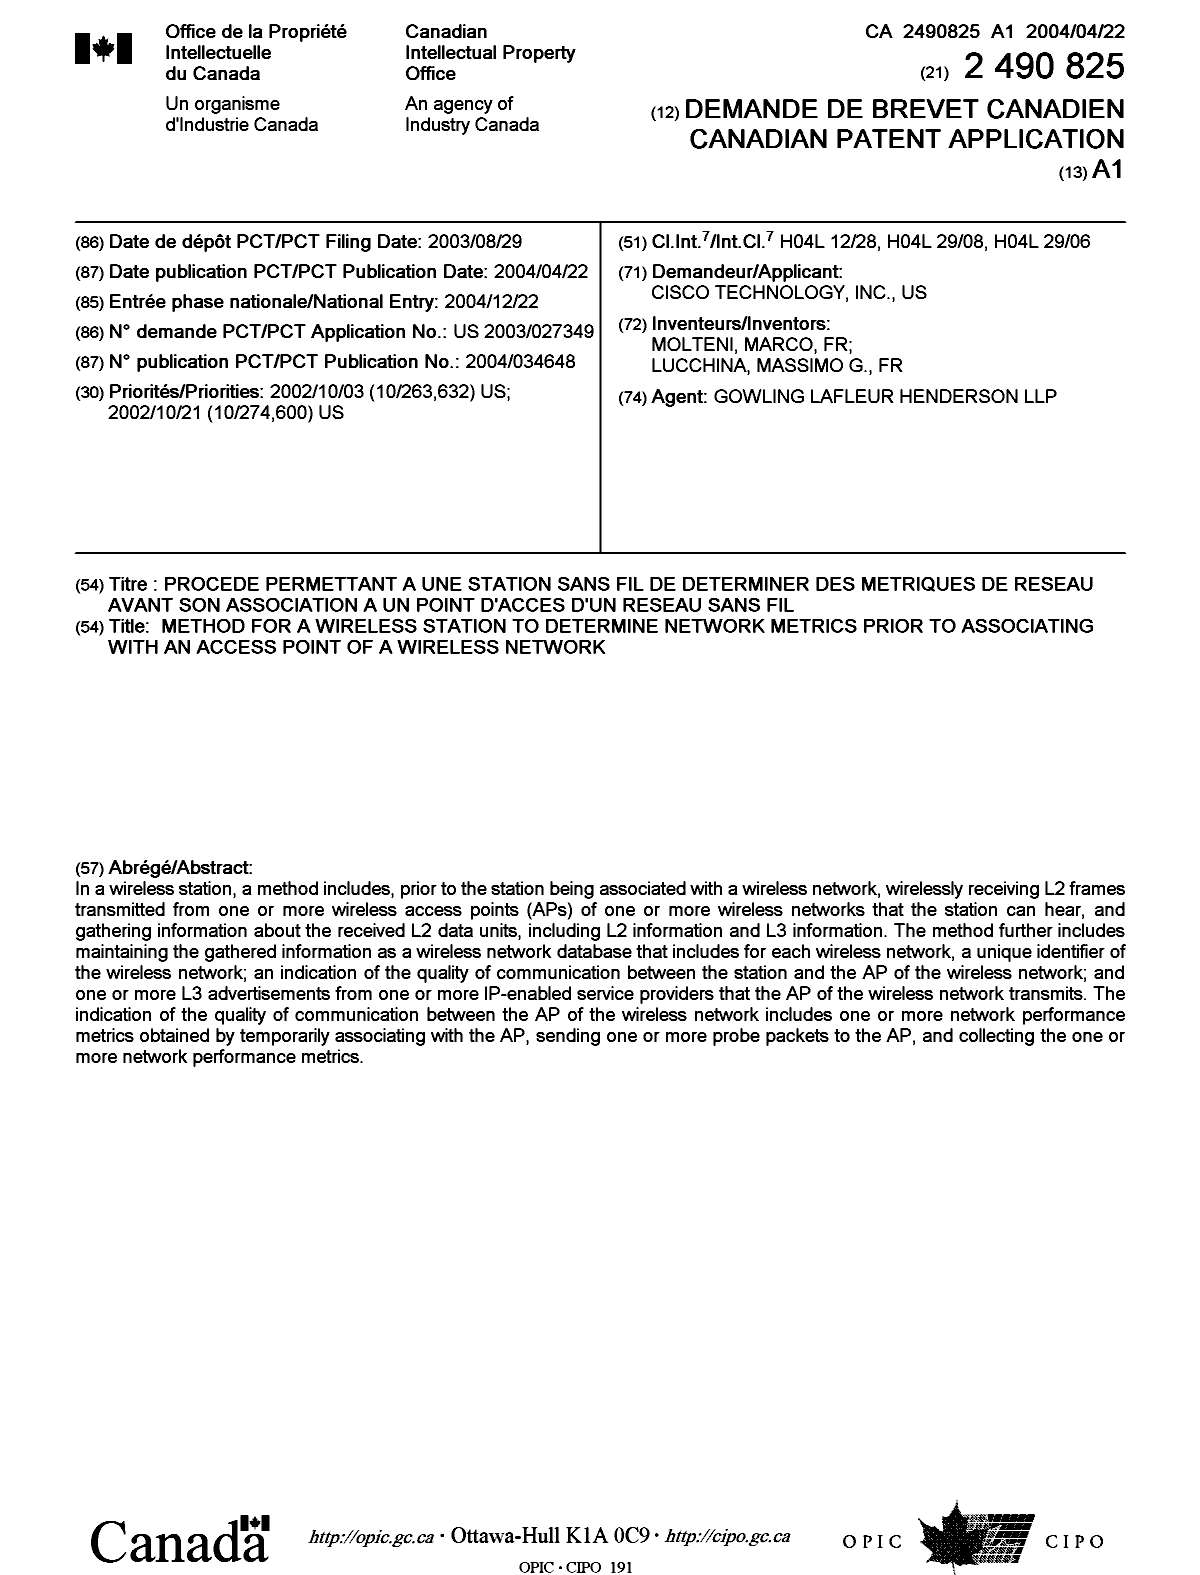 Document de brevet canadien 2490825. Page couverture 20050614. Image 1 de 1